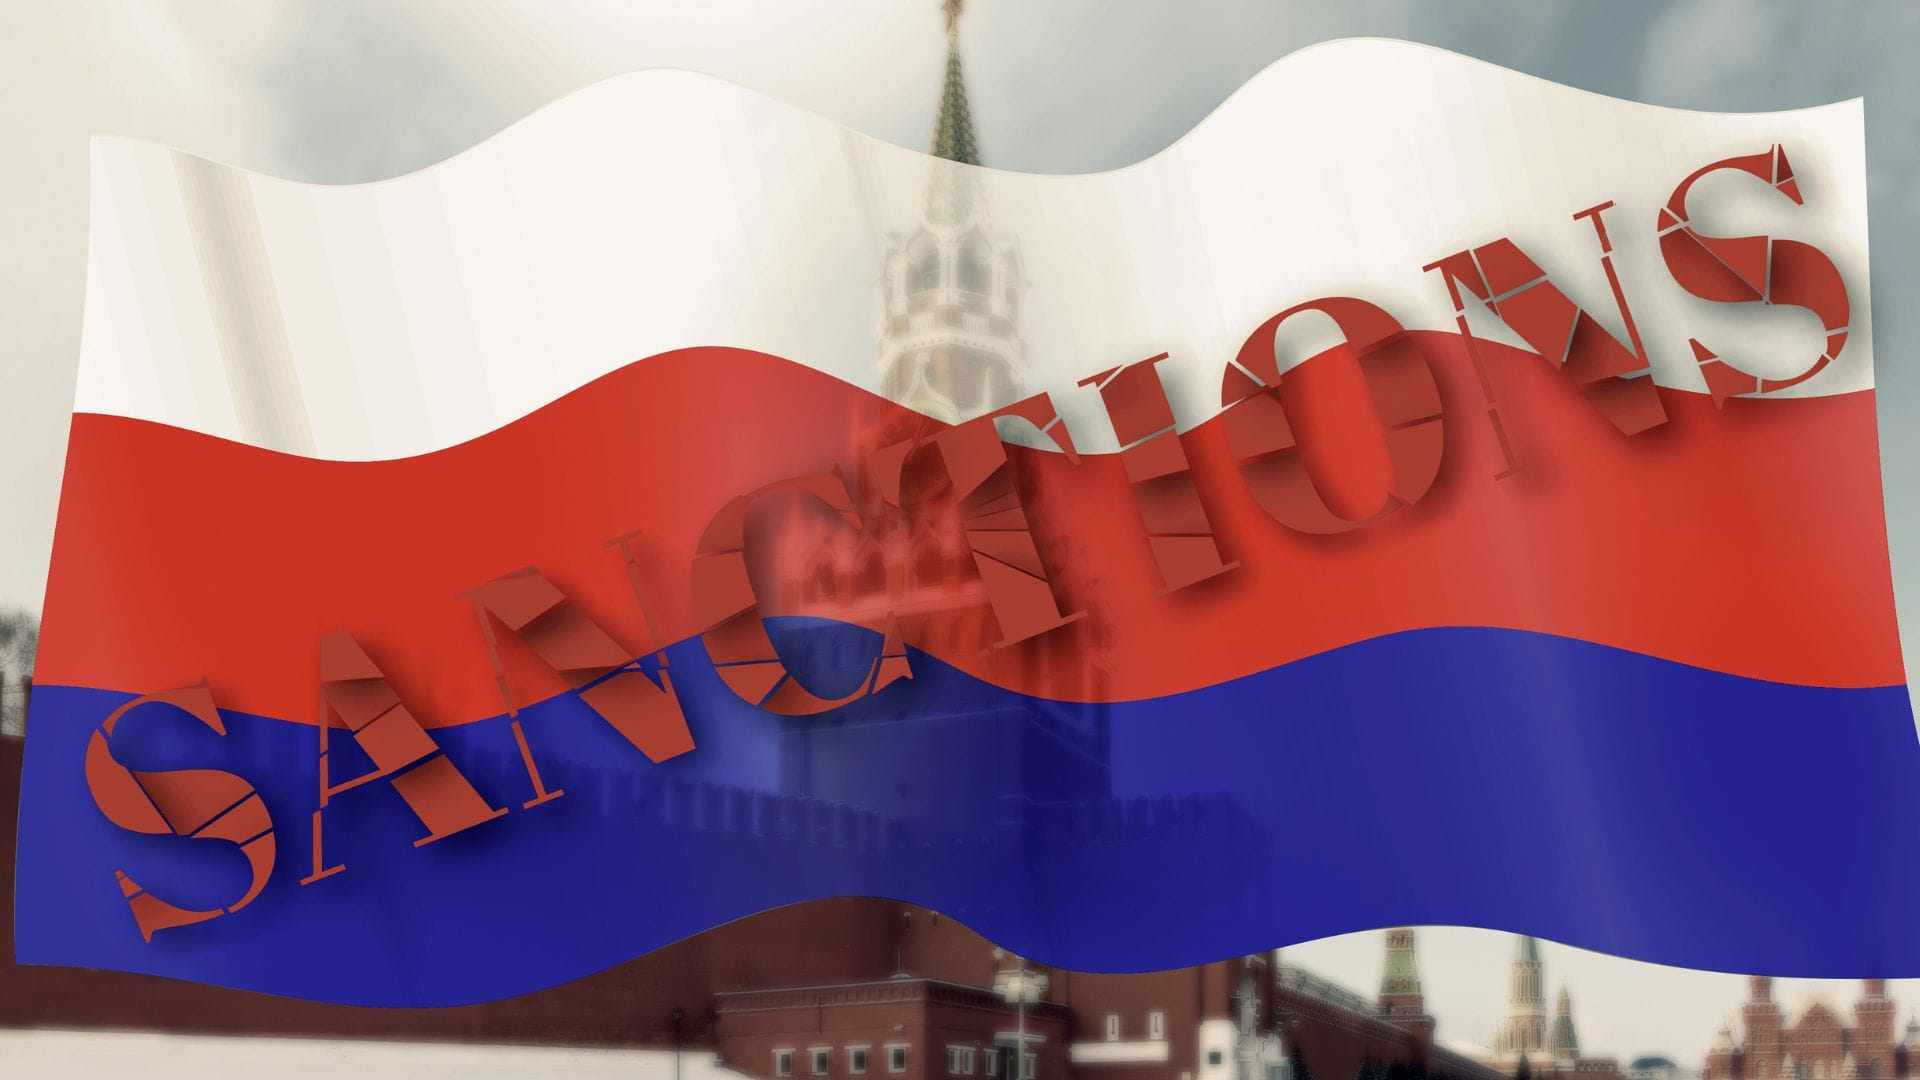 Venäjä-pakotteet kuvituskuvassa punainen tori ja venäjän lippu, jonka päällä lukee "sanctions".